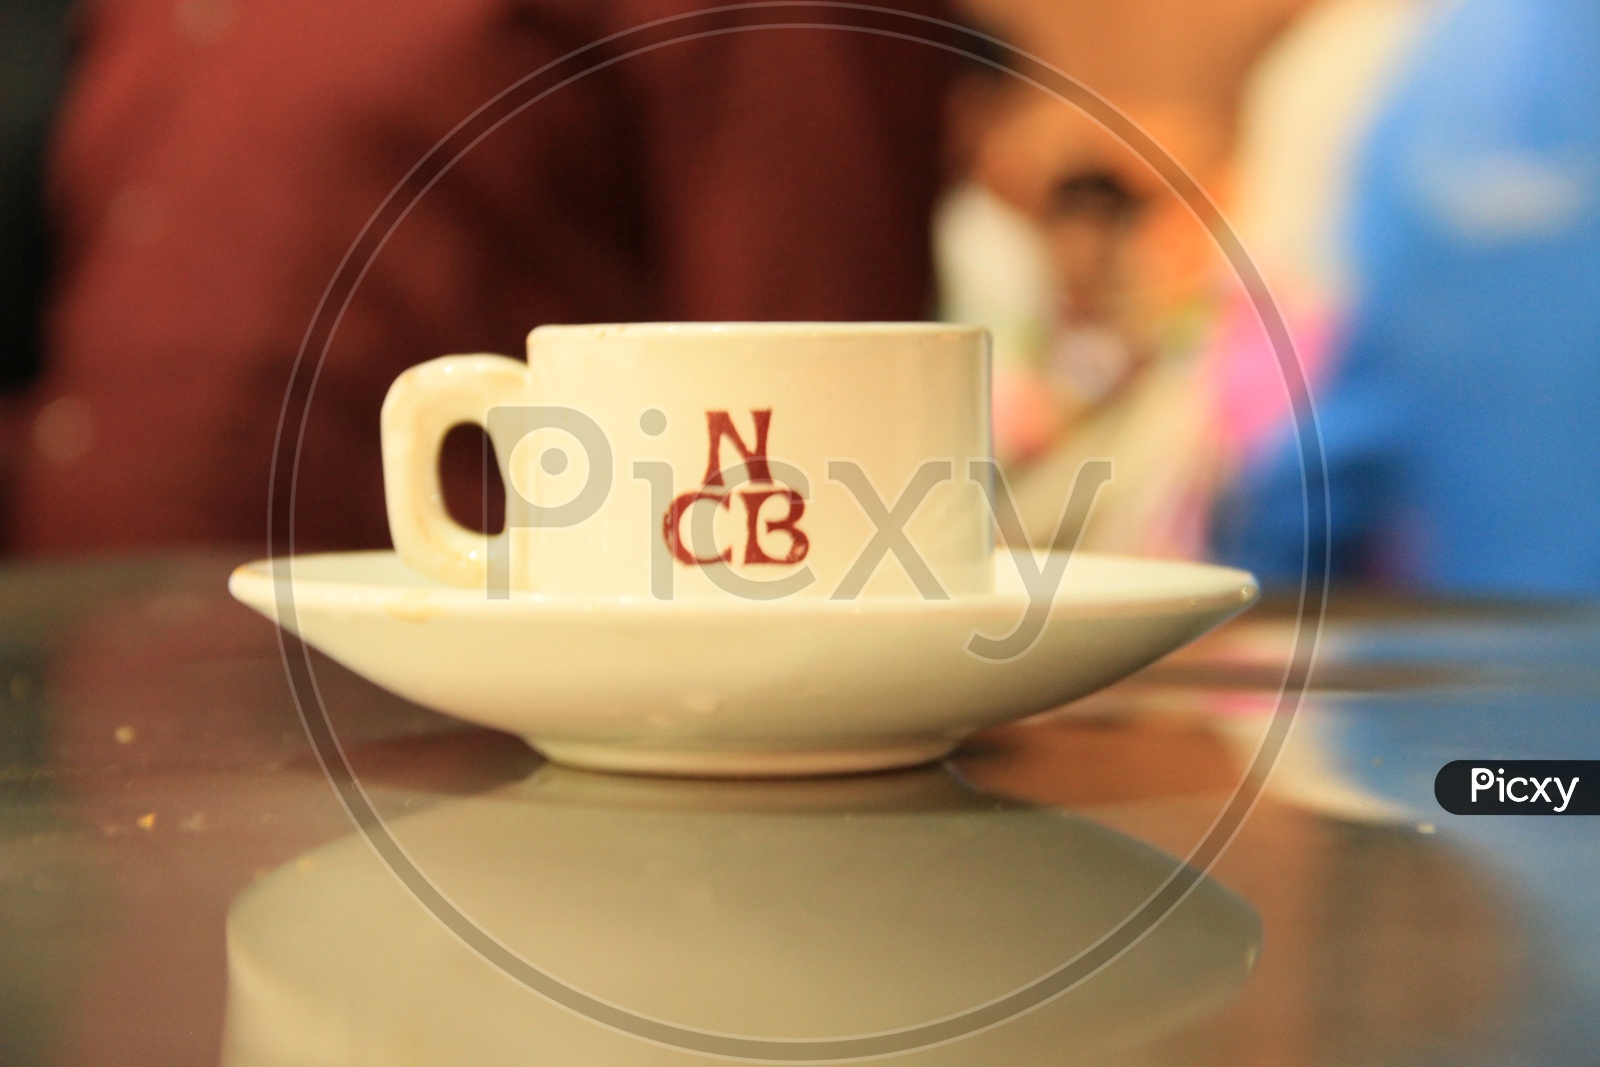 Nimrah Cafe Irani Tea Cup On Table